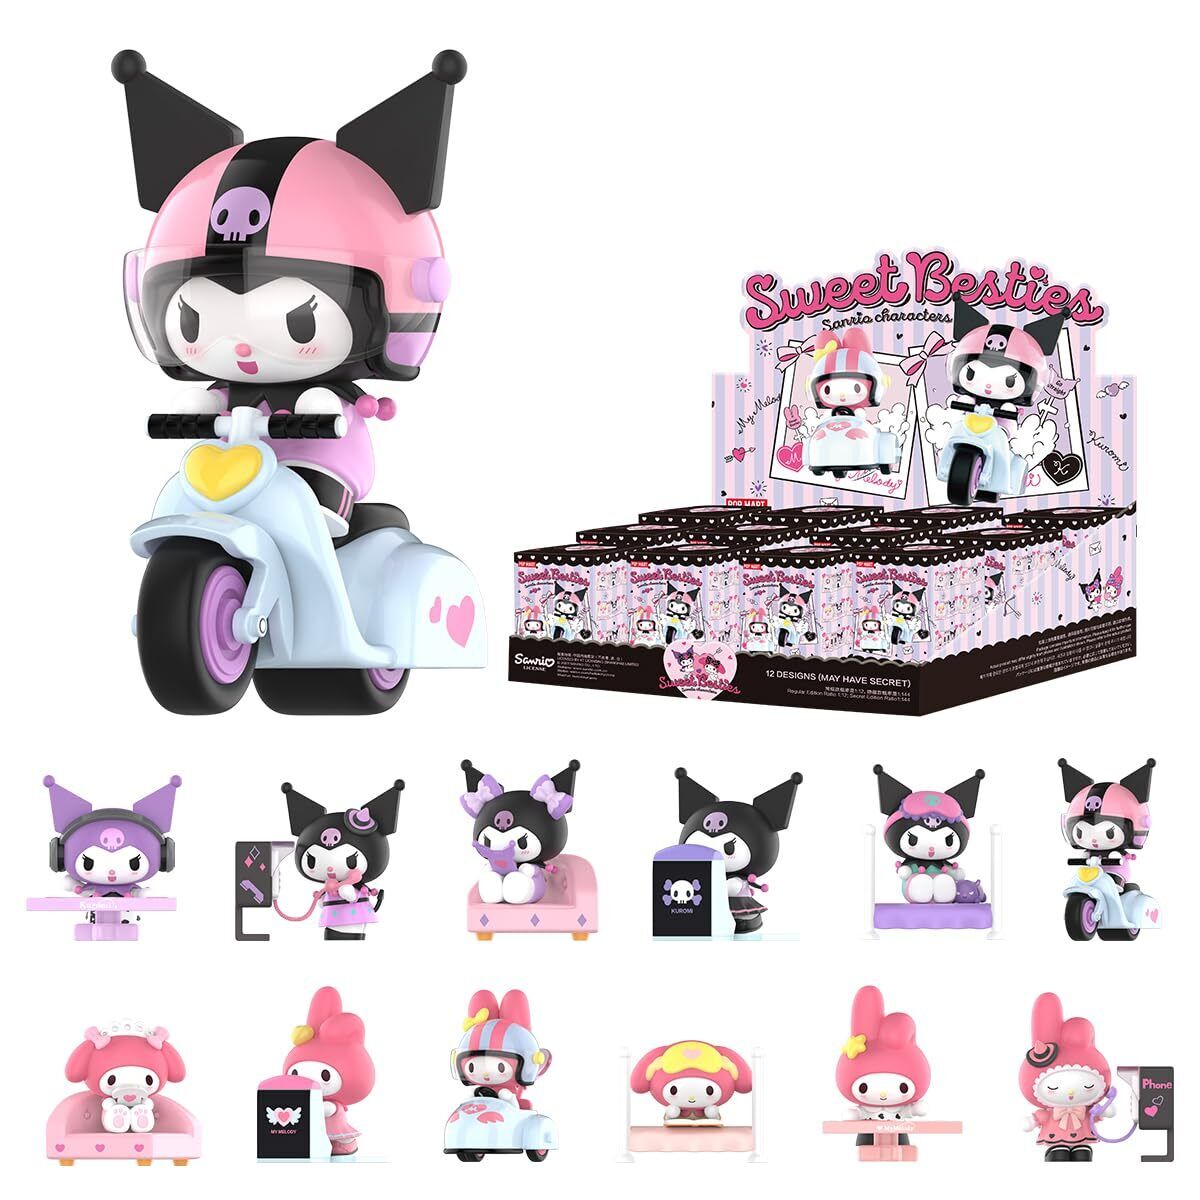 POPMART Sanrio characters Sweet Besties Series Figures [Assorted Box] Popmart Ga